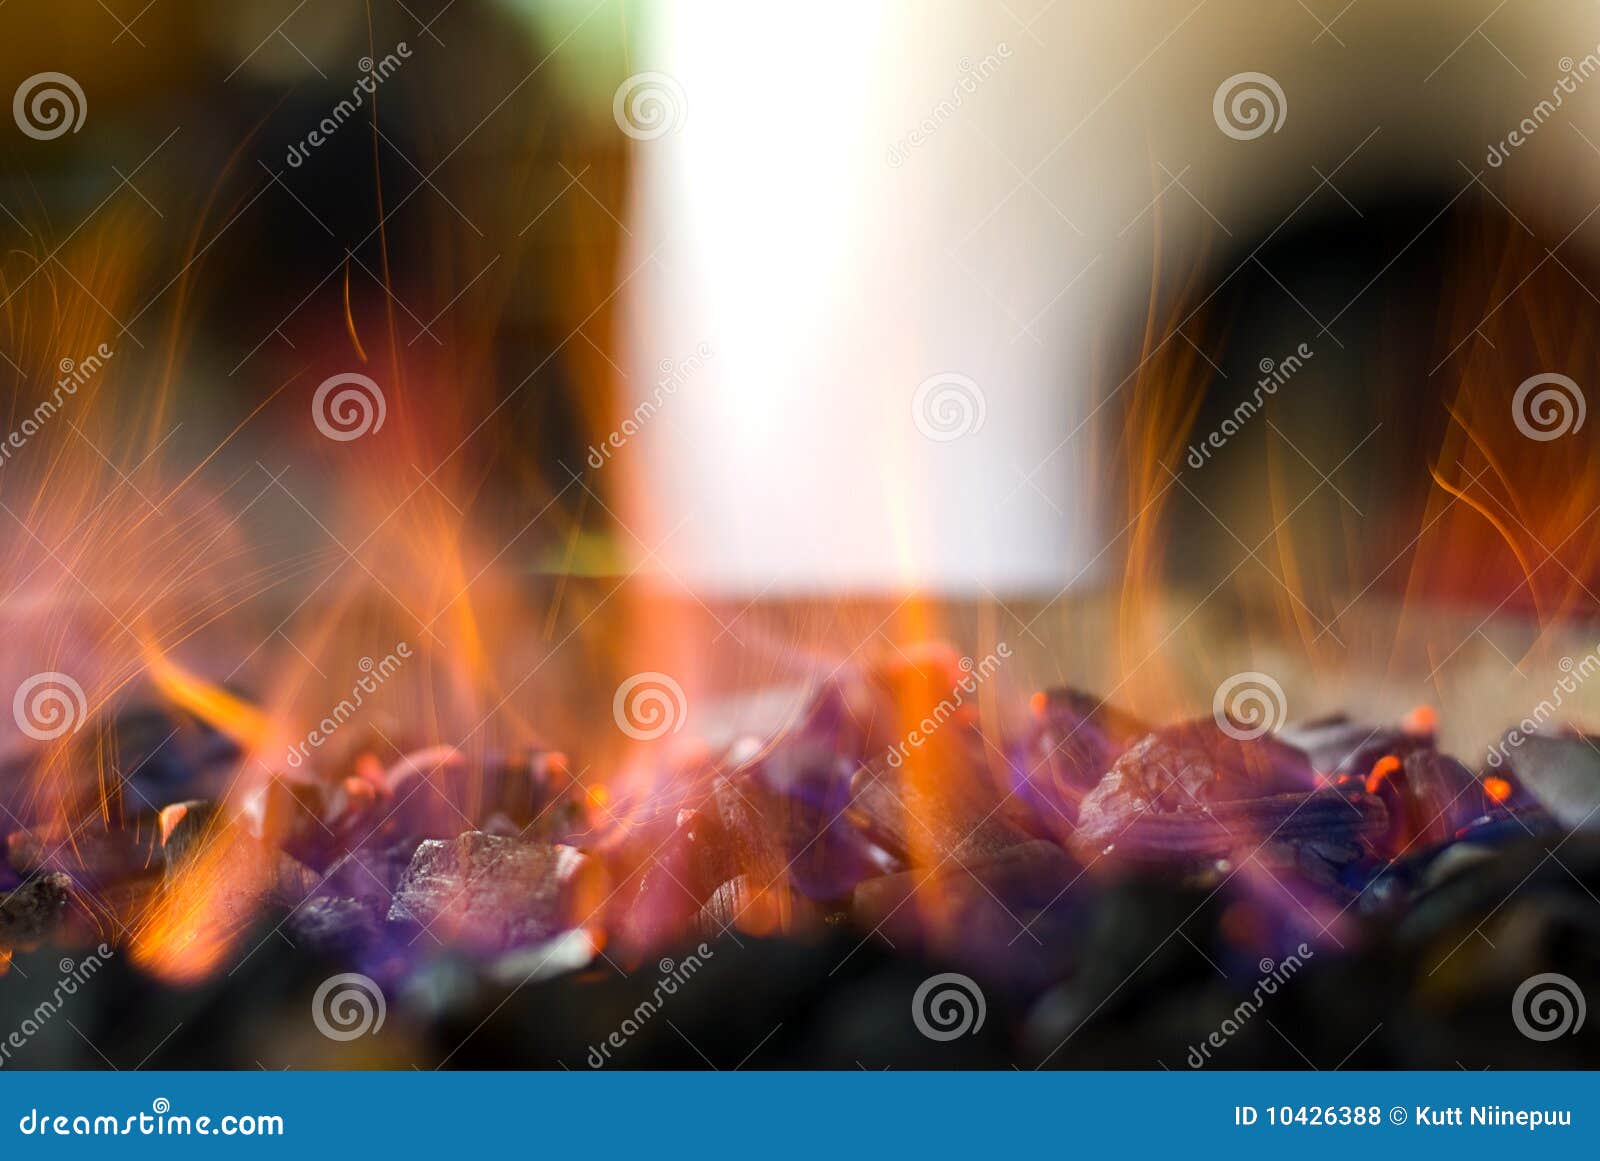 sparkling hot coals